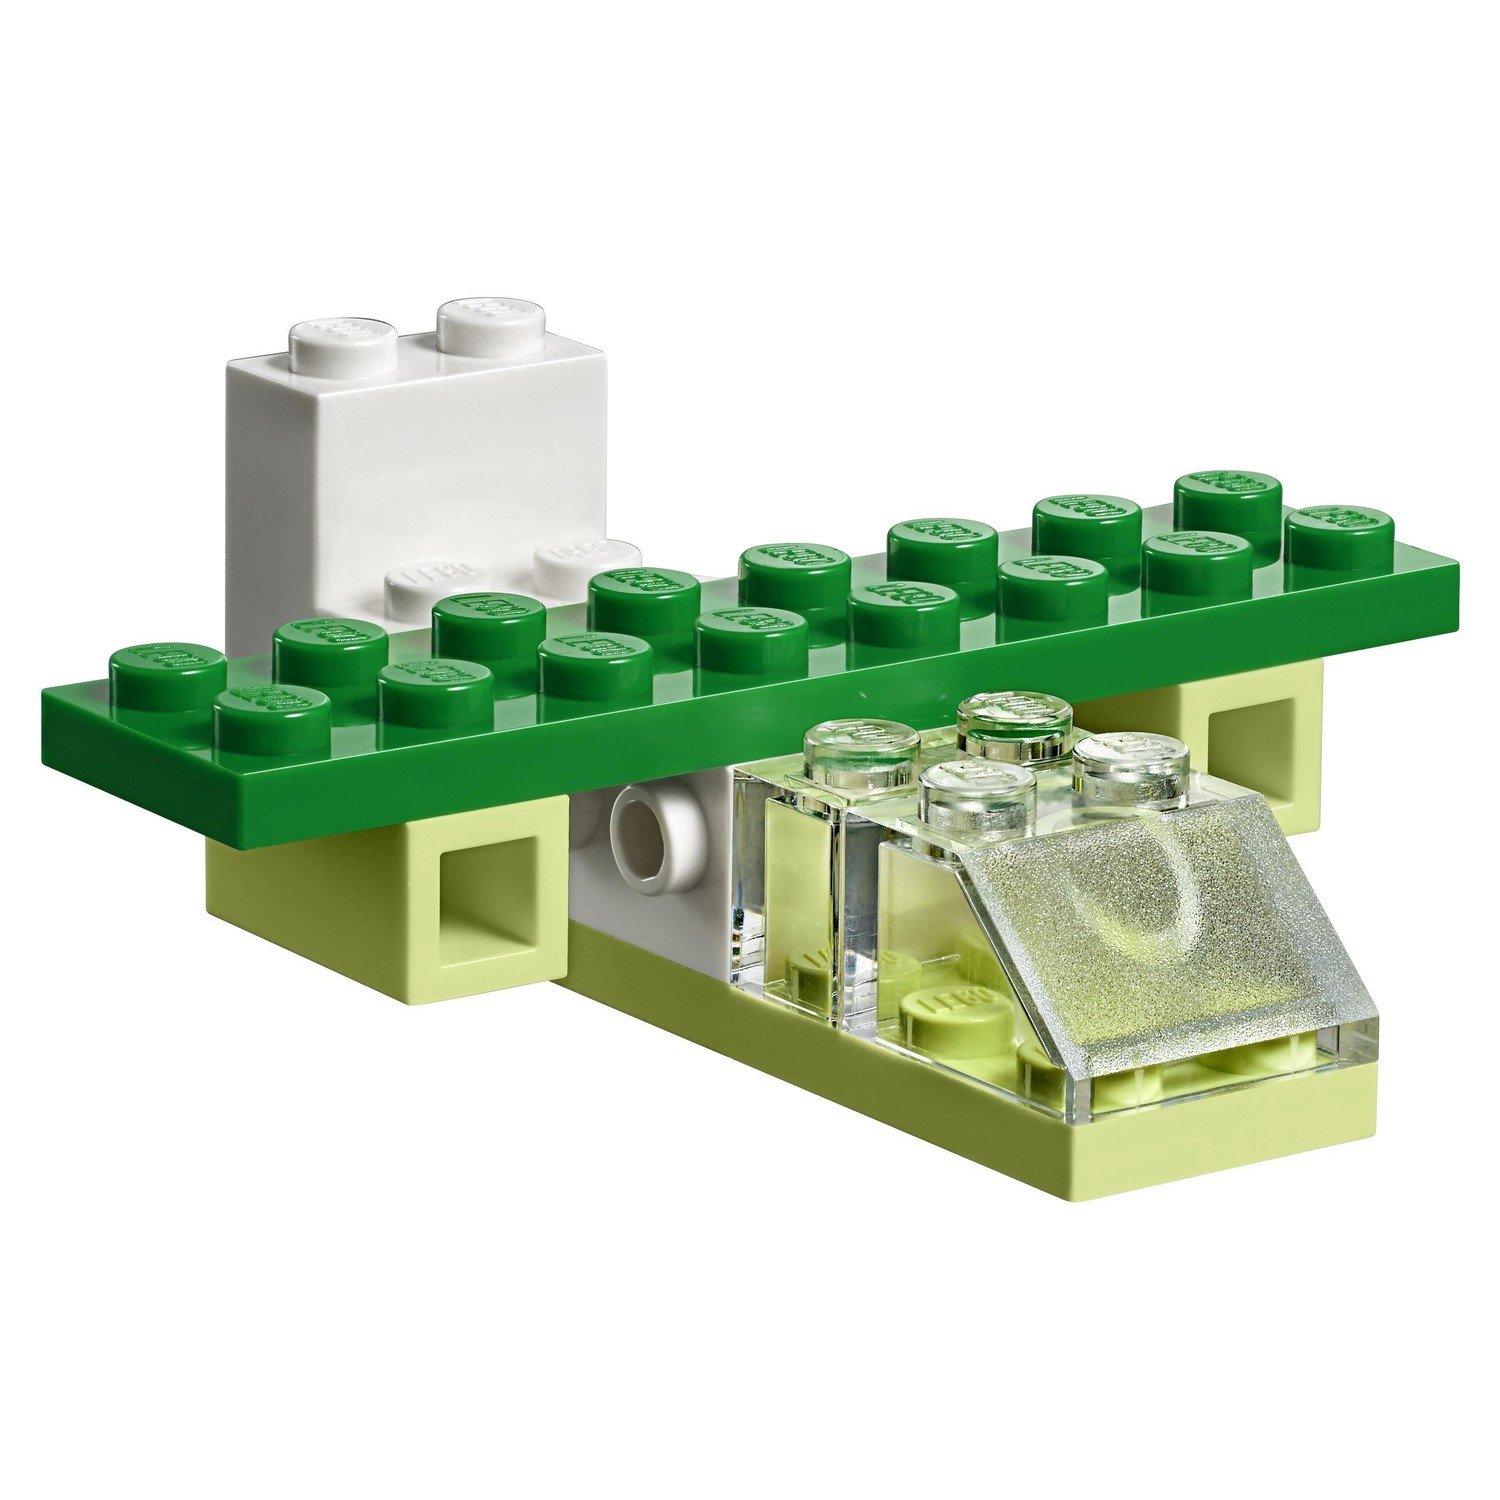 Конструктор LEGO Чемоданчик для творчества и конструирования Classic (10713) - фото 7